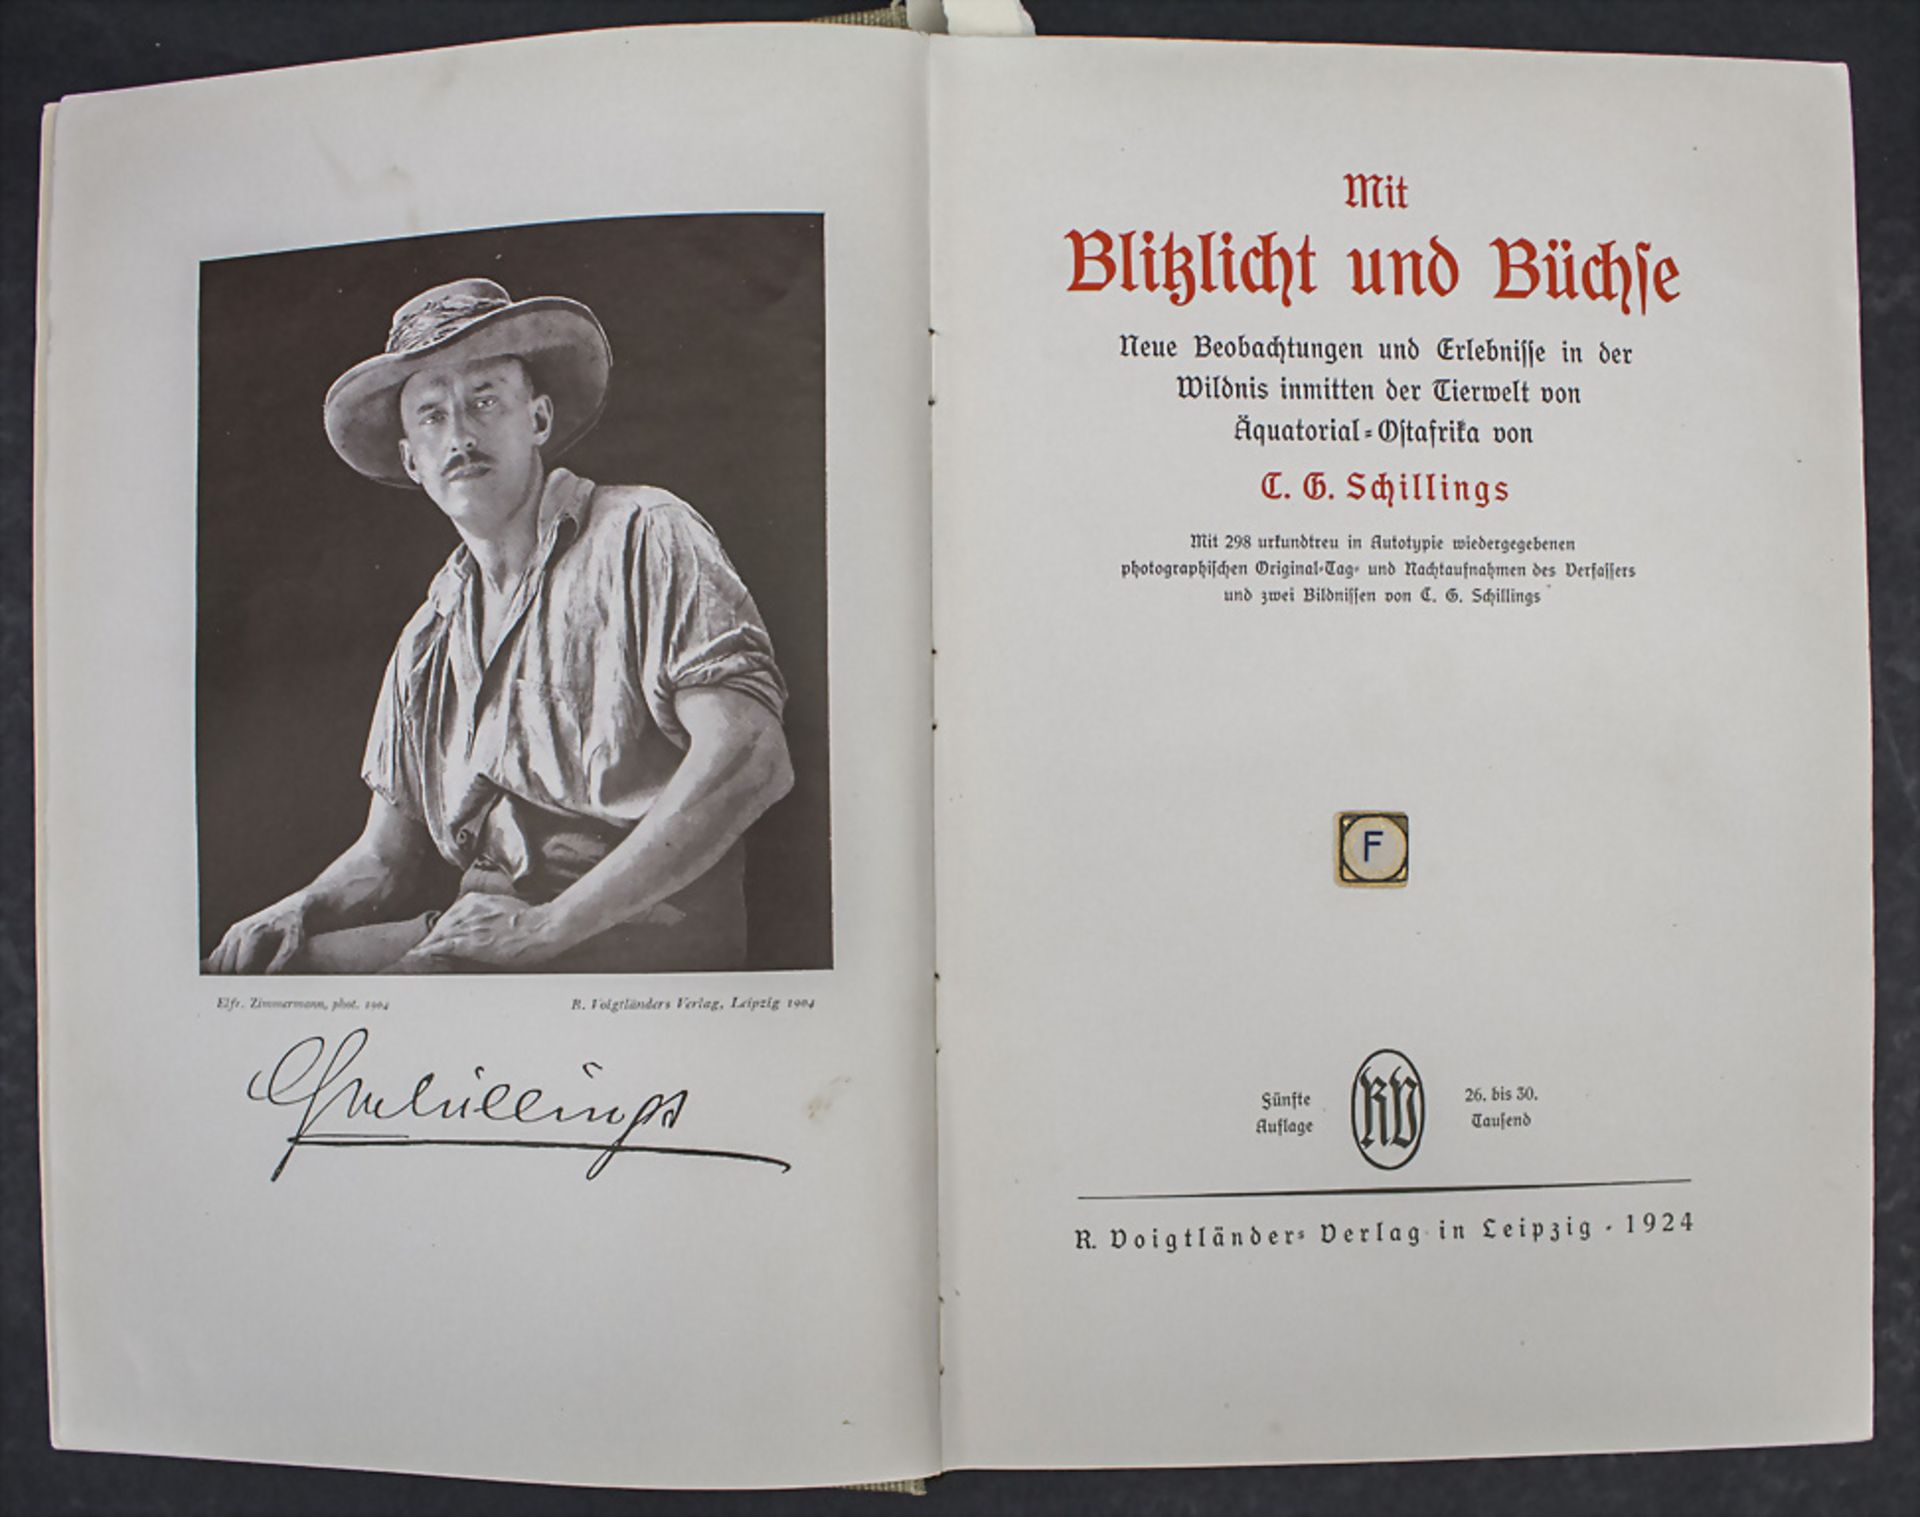 C.G. Schillings: 'Mit Blitzlicht und Büchse', Leipzig, 1924 - Image 2 of 7